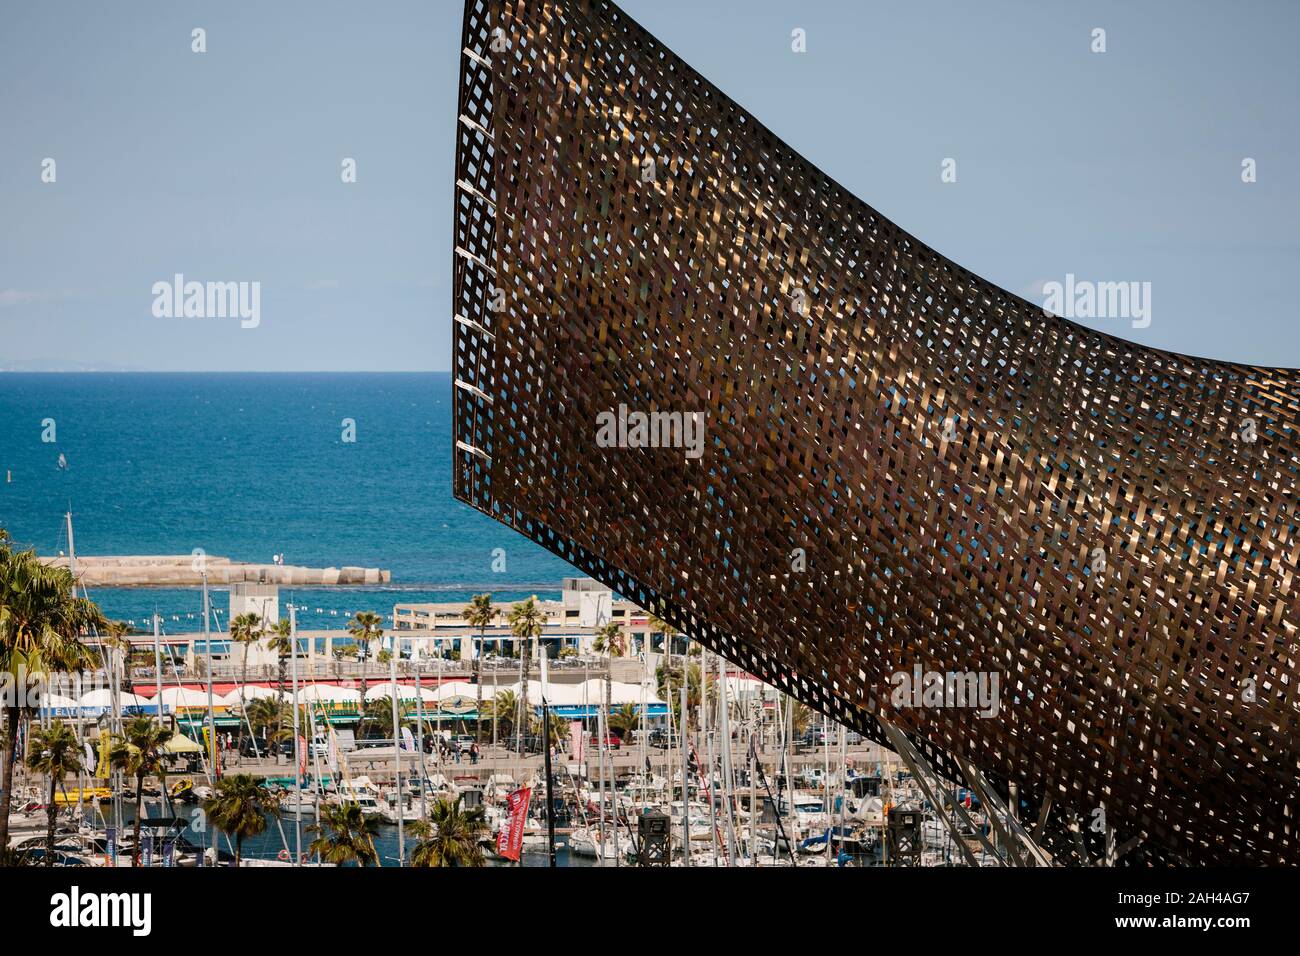 Sculpture de baleine par Frank Gehry dans le Port Olympique de Barcelone Banque D'Images